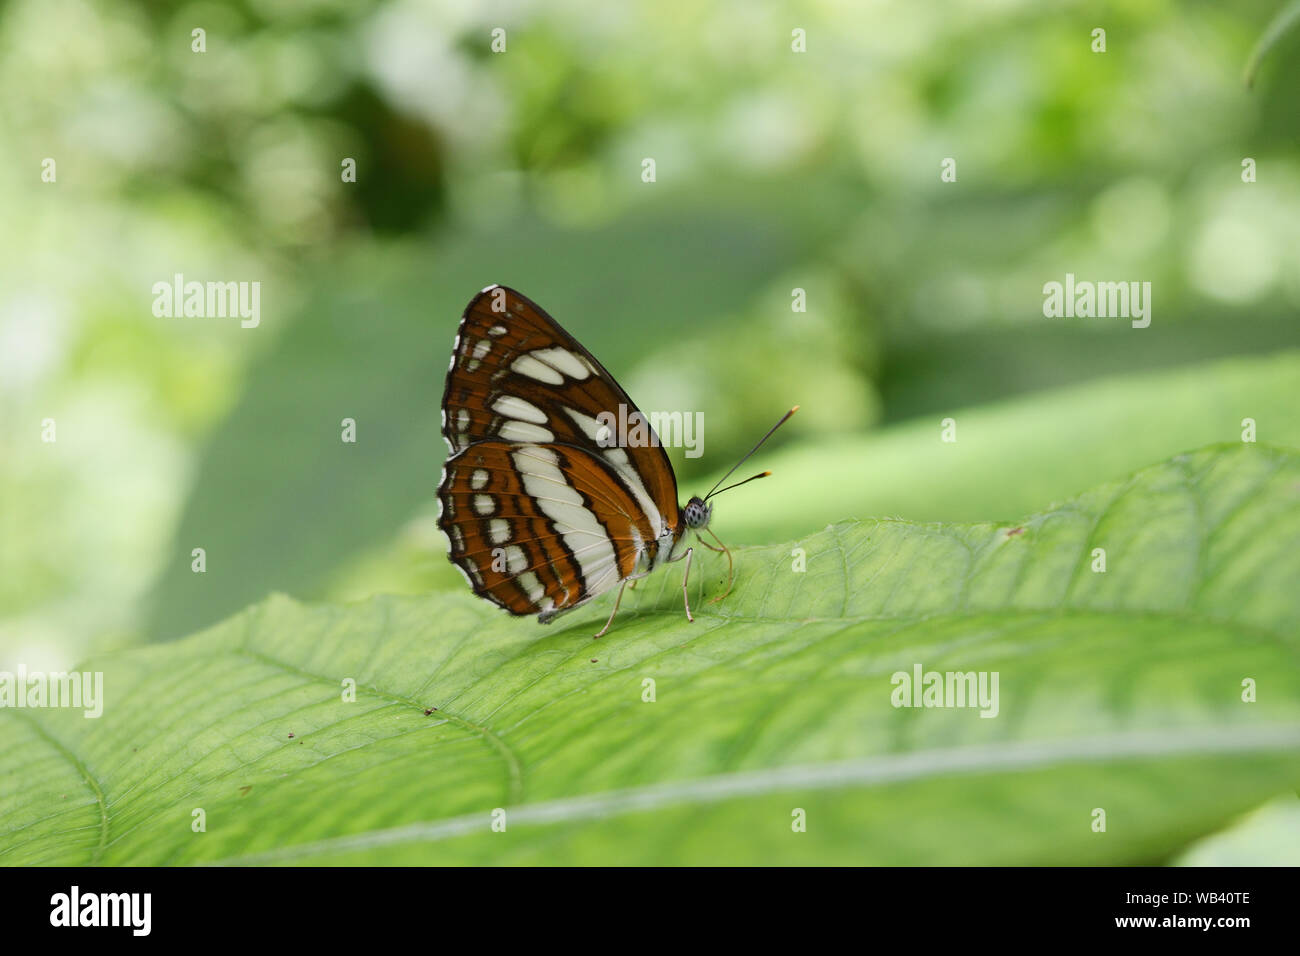 Die gemeinsame Plain Sailor Schmetterling auf Blatt mit natürlichen, grünen Hintergrund, abstrakte Muster braun mit weißer und schwarzer Farbe auf Insekt Flügel Stockfoto